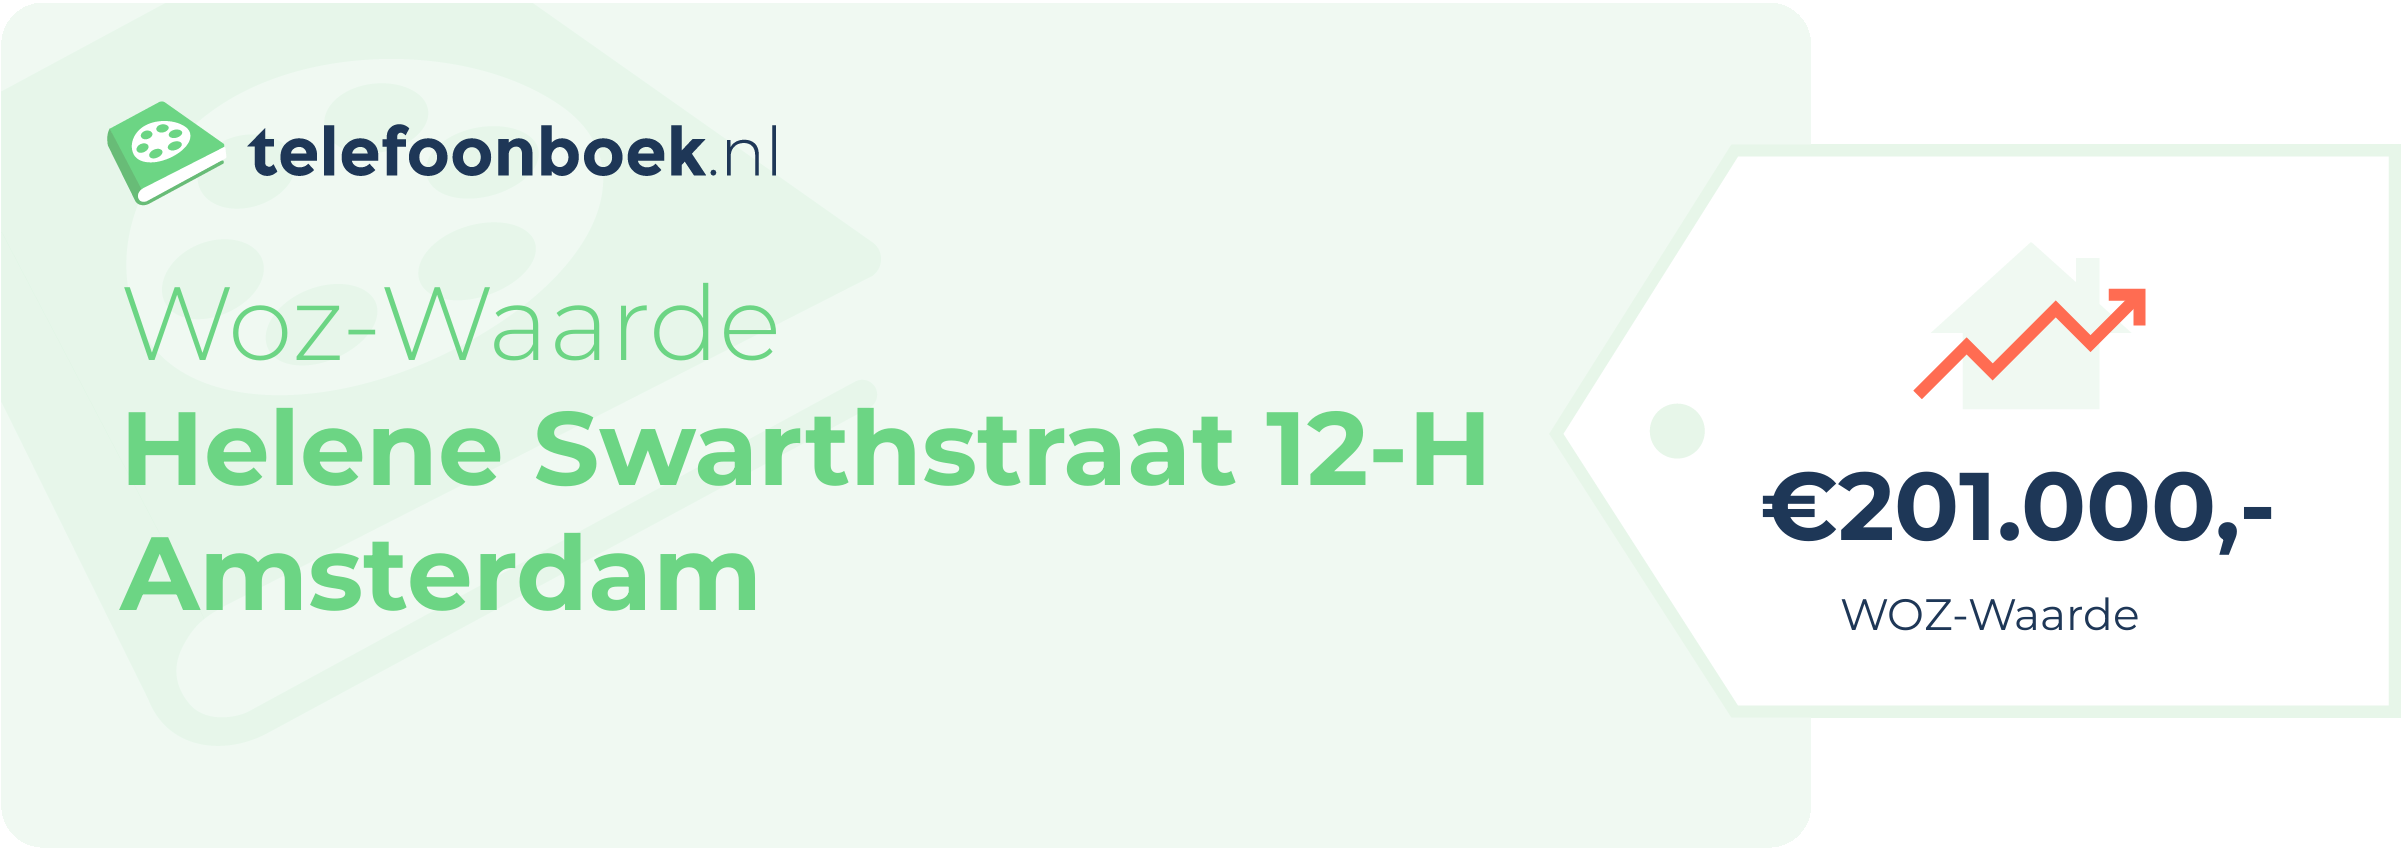 WOZ-waarde Helene Swarthstraat 12-H Amsterdam